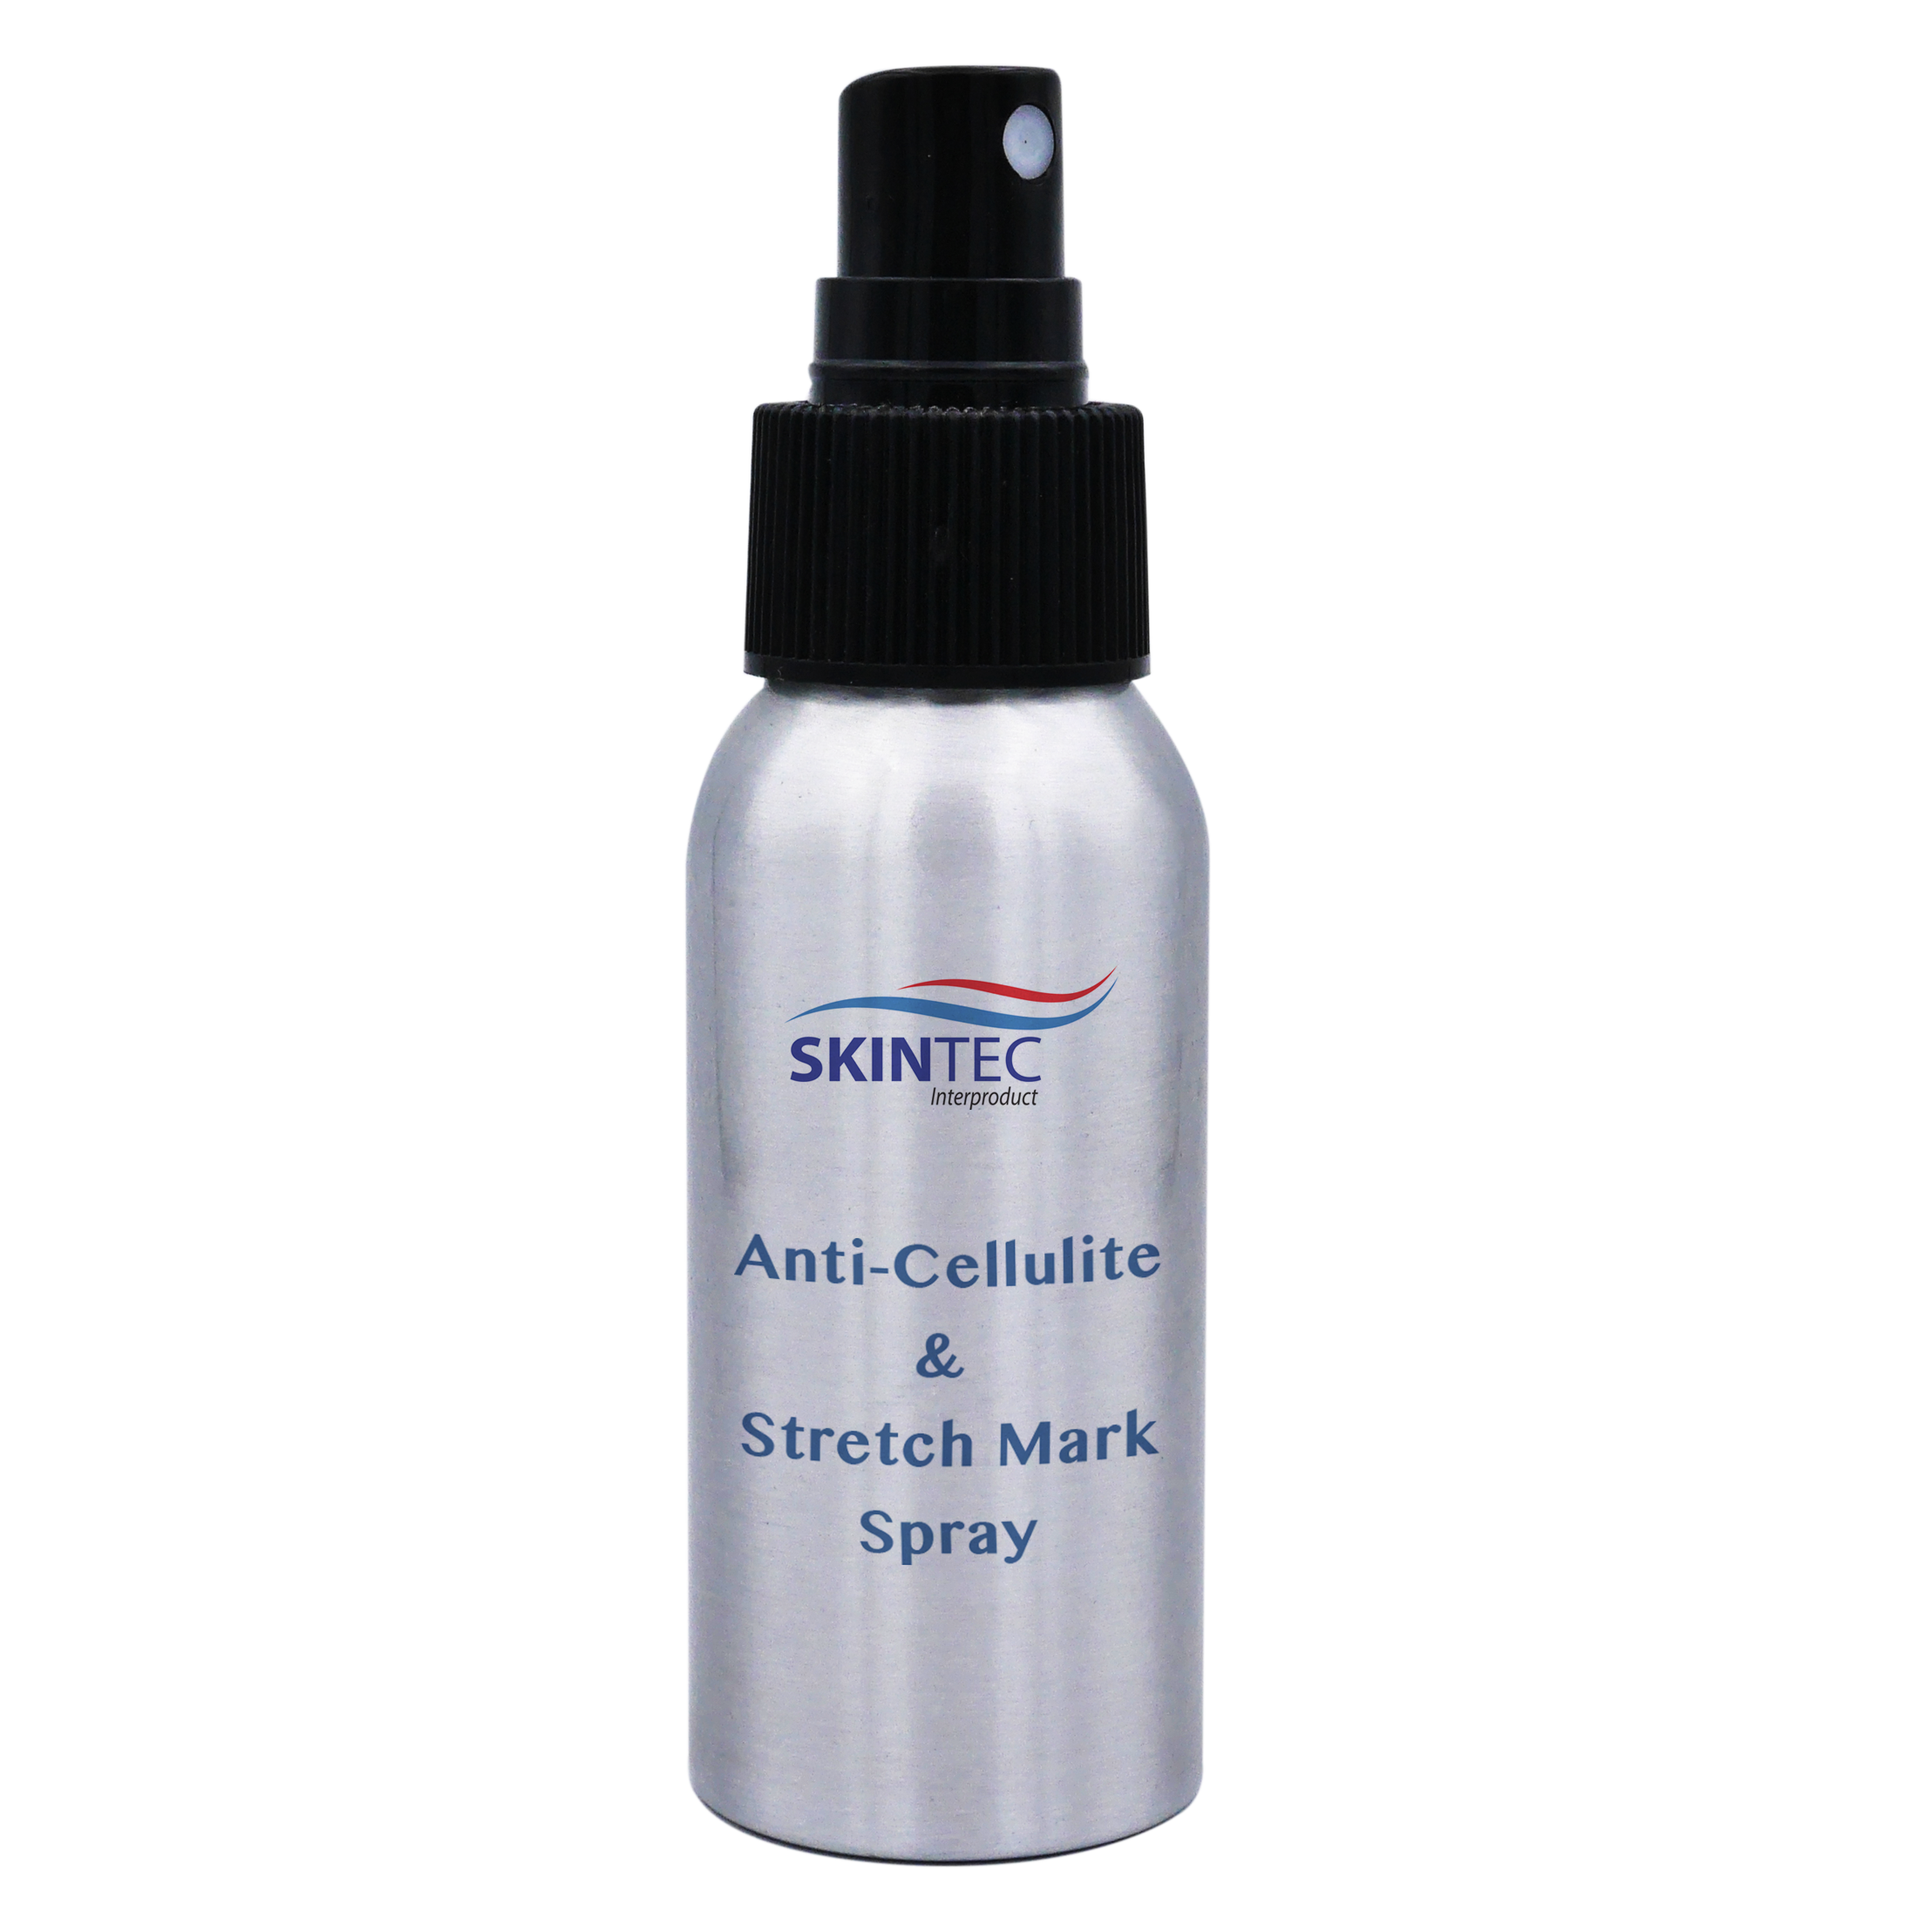 Anti-Cellulite & Stretch Mark Spray